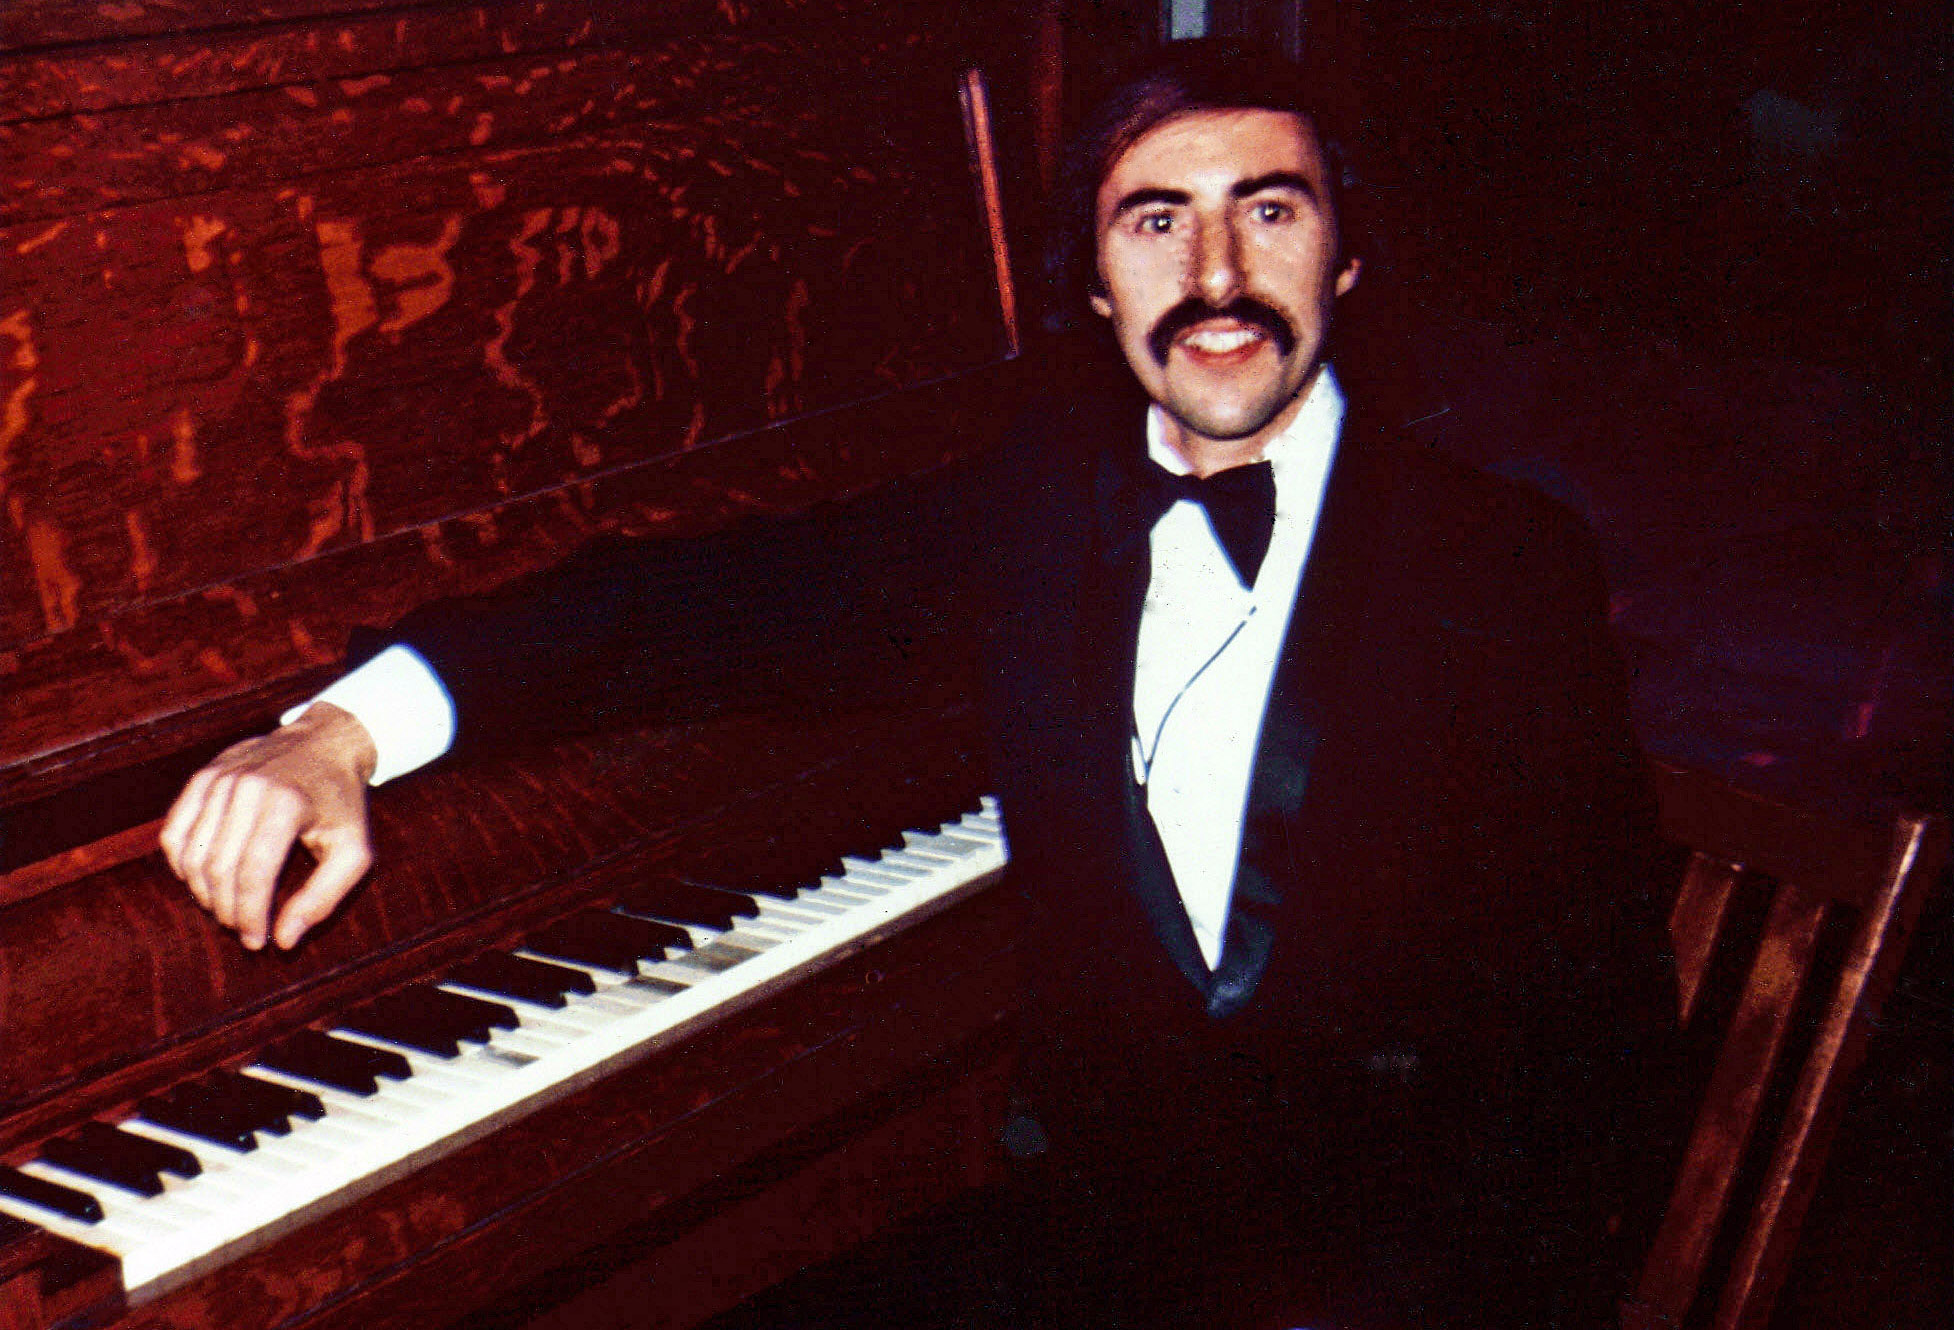 Denis at piano - 1975